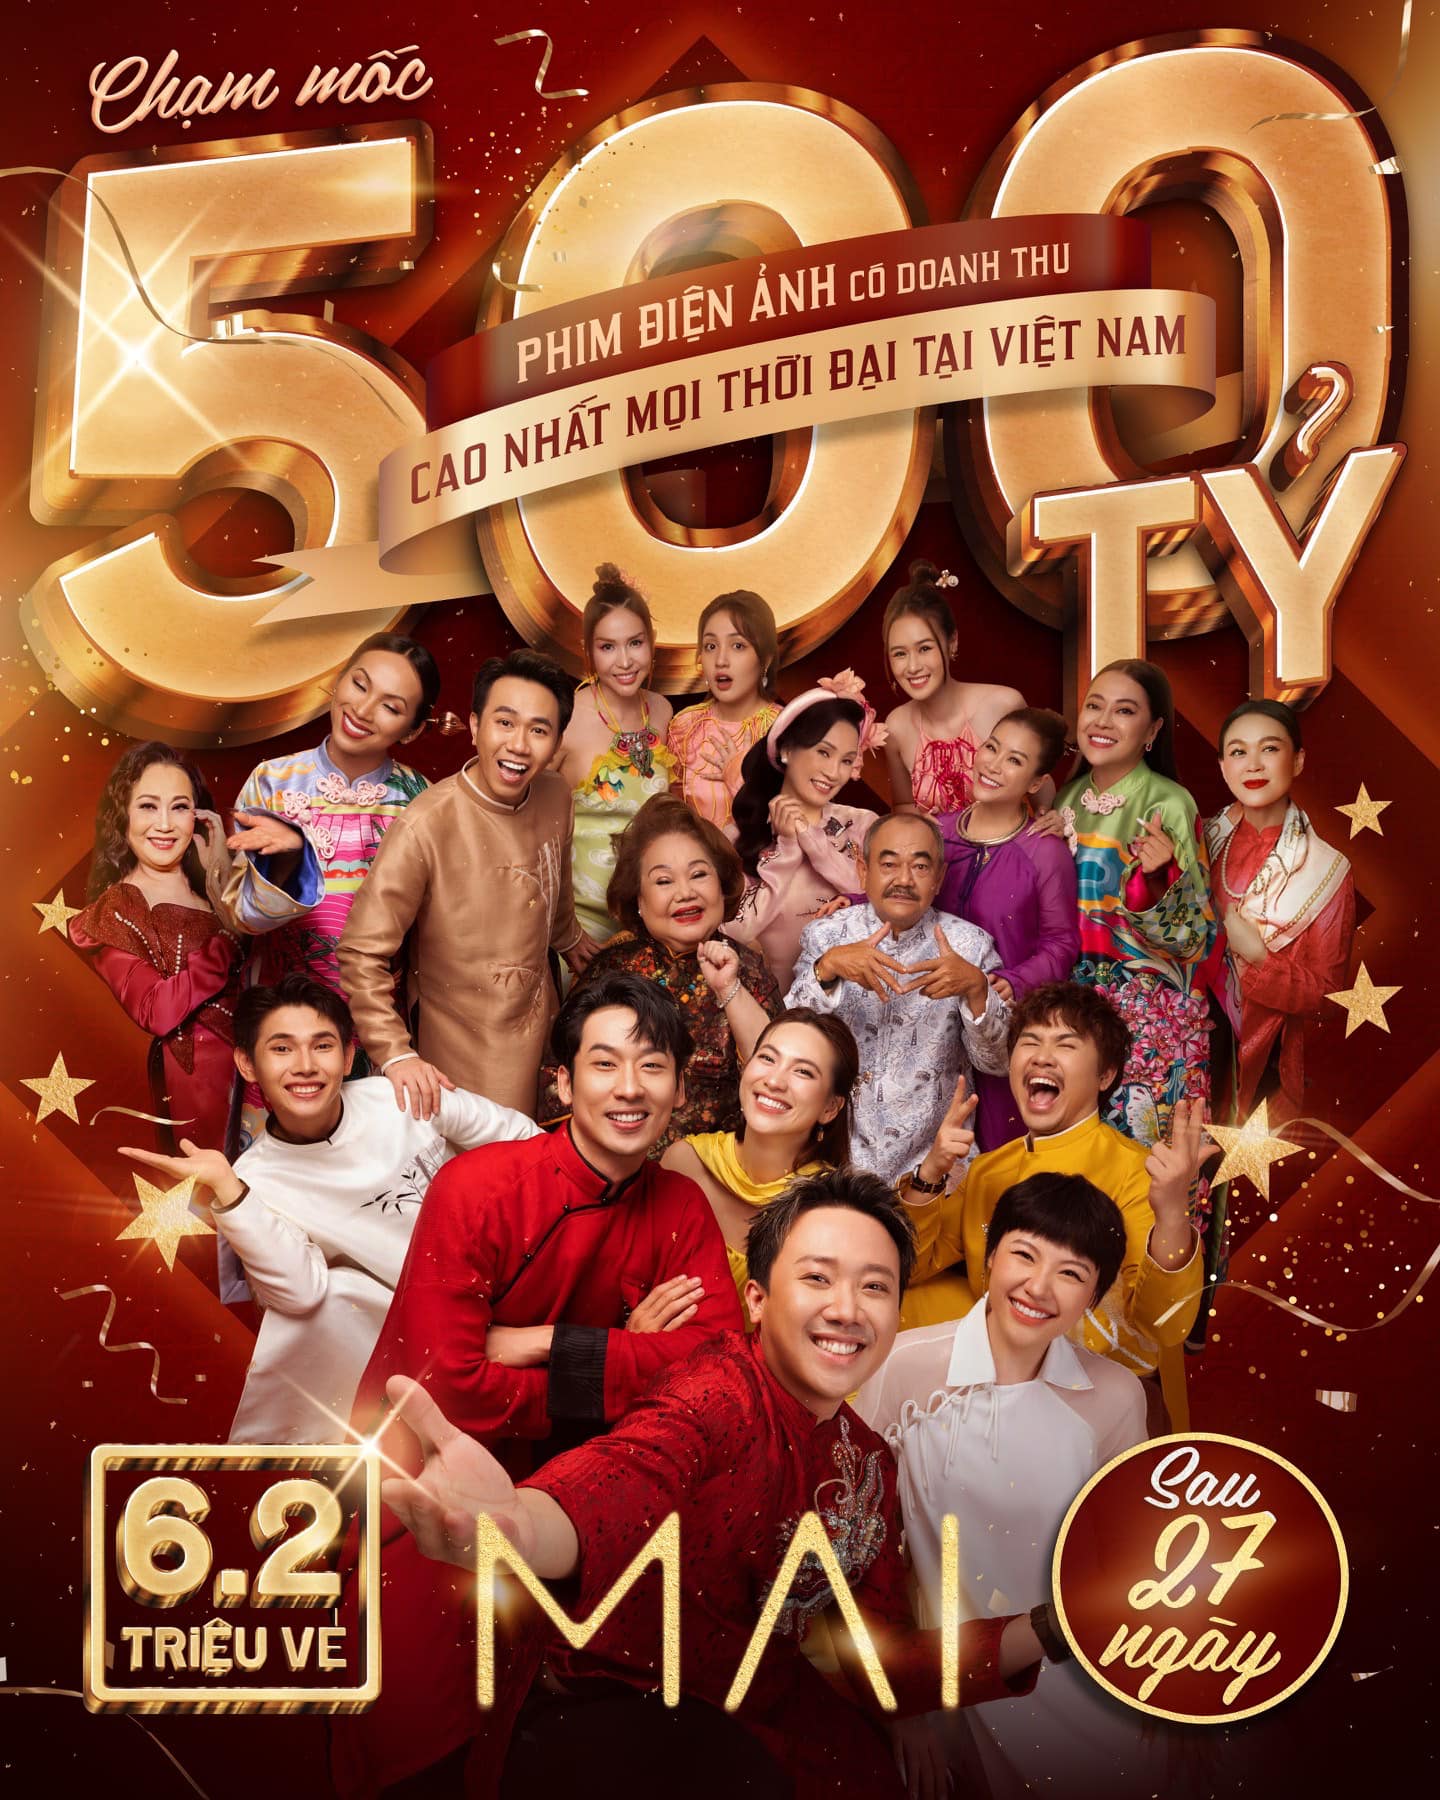 Phim Mai cán mốc 500 tỷ đồng, trở thành phim điện ảnh Việt Nam có doanh thu cao nhất mọi thời đại.